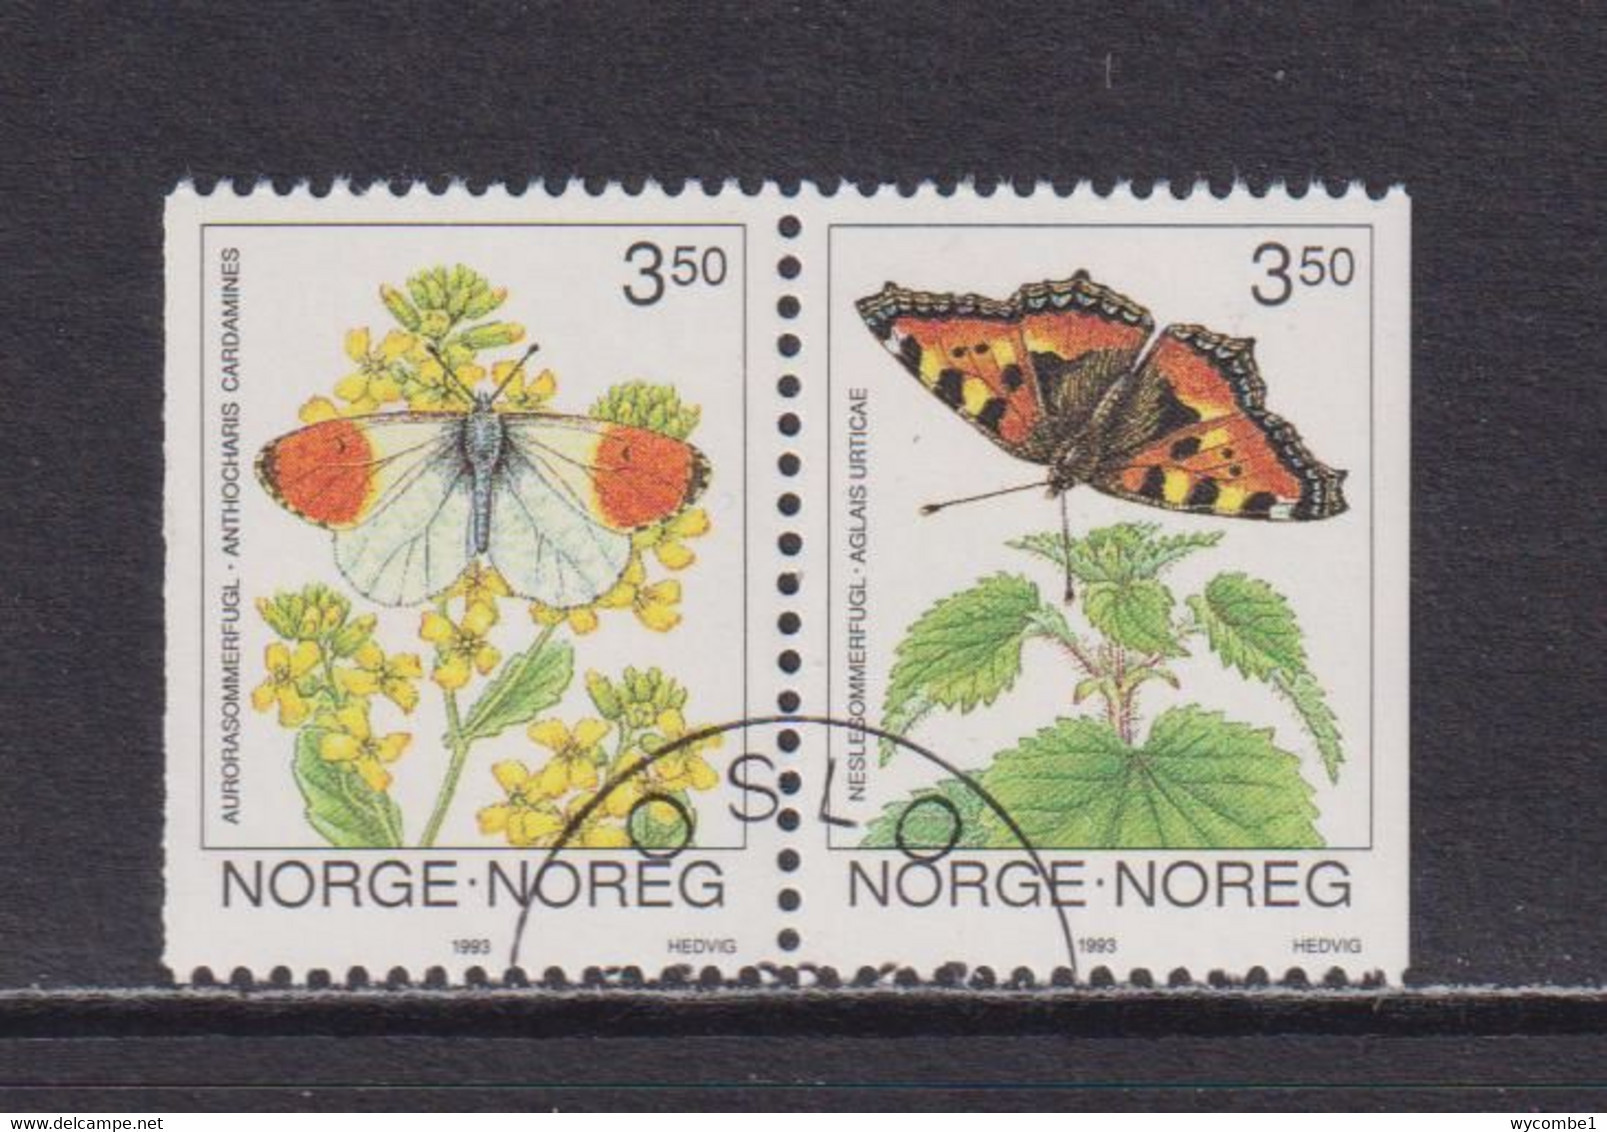 NORWAY - 1993 Butterflies Booklet Pair Used As Scan - Usati